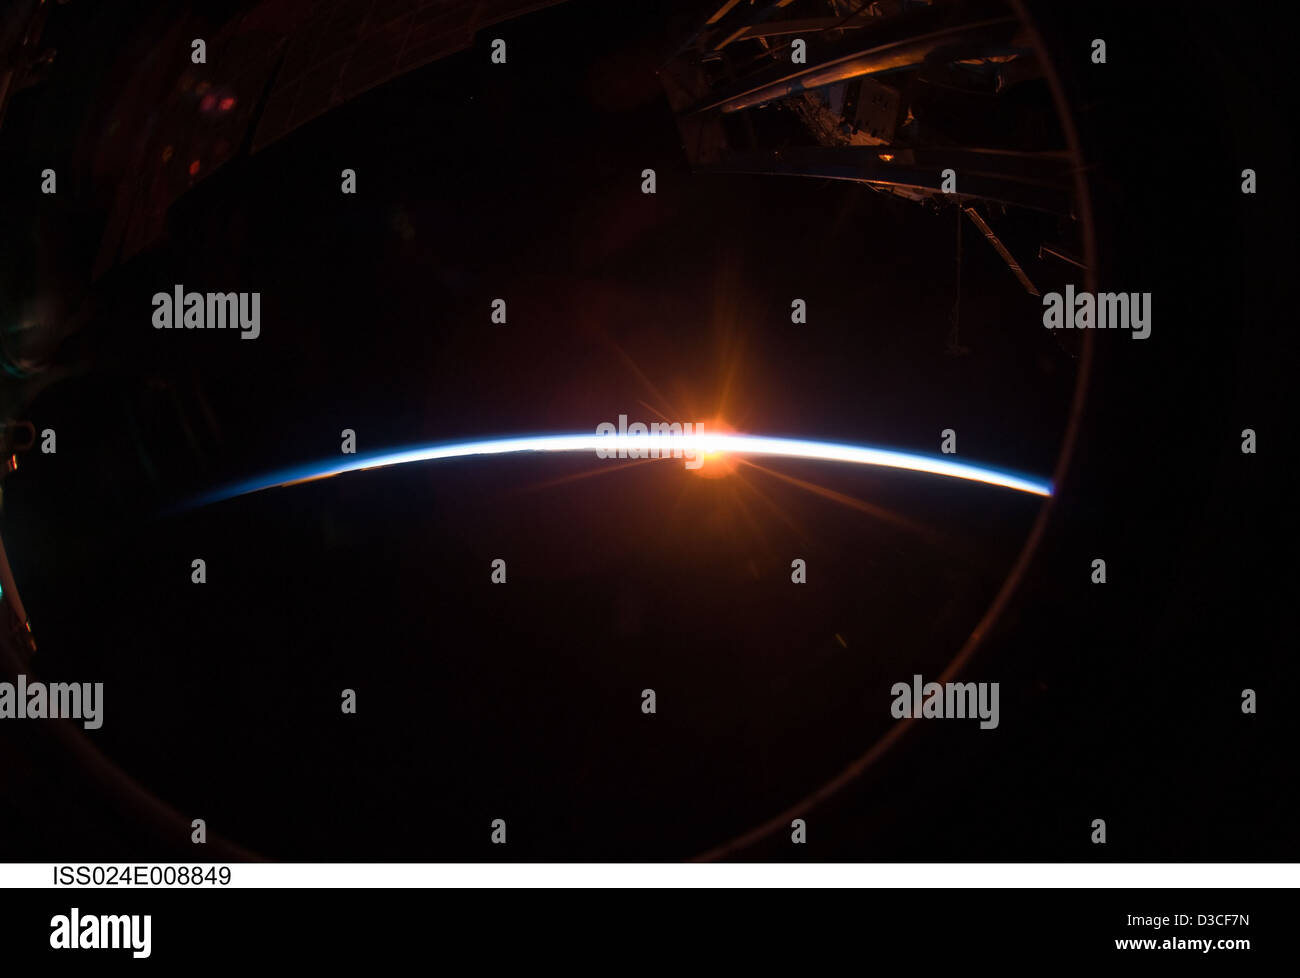 1001 Nächte 1001nights-Crew Earth Observation Erde Sonnenuntergang SunsetMania Atmosphäre Crewearthobservation internationalen Raum stati Stockfoto